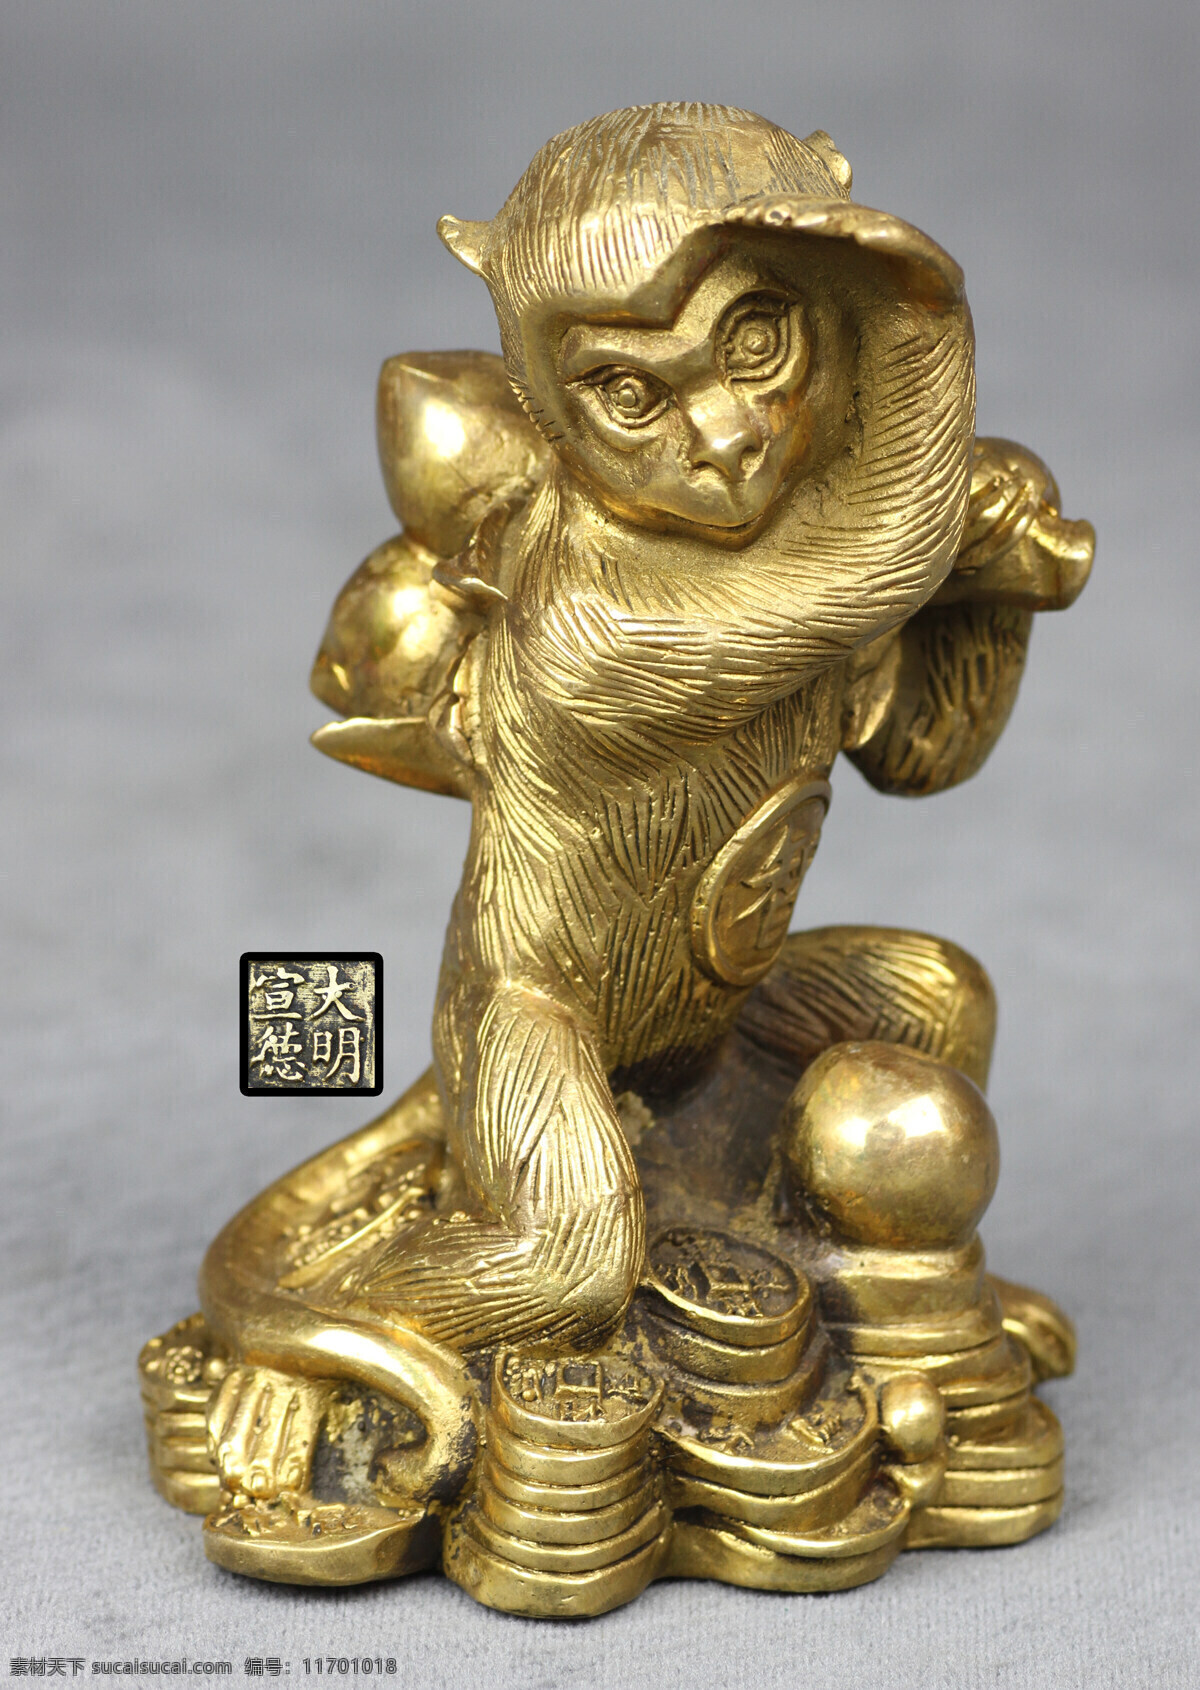 猴摆件 猴年工艺品 猴年雕像 猴年 十二生肖 申 猴 猴工艺品 猴年素材 猴年新年 金猴 文化艺术 传统文化